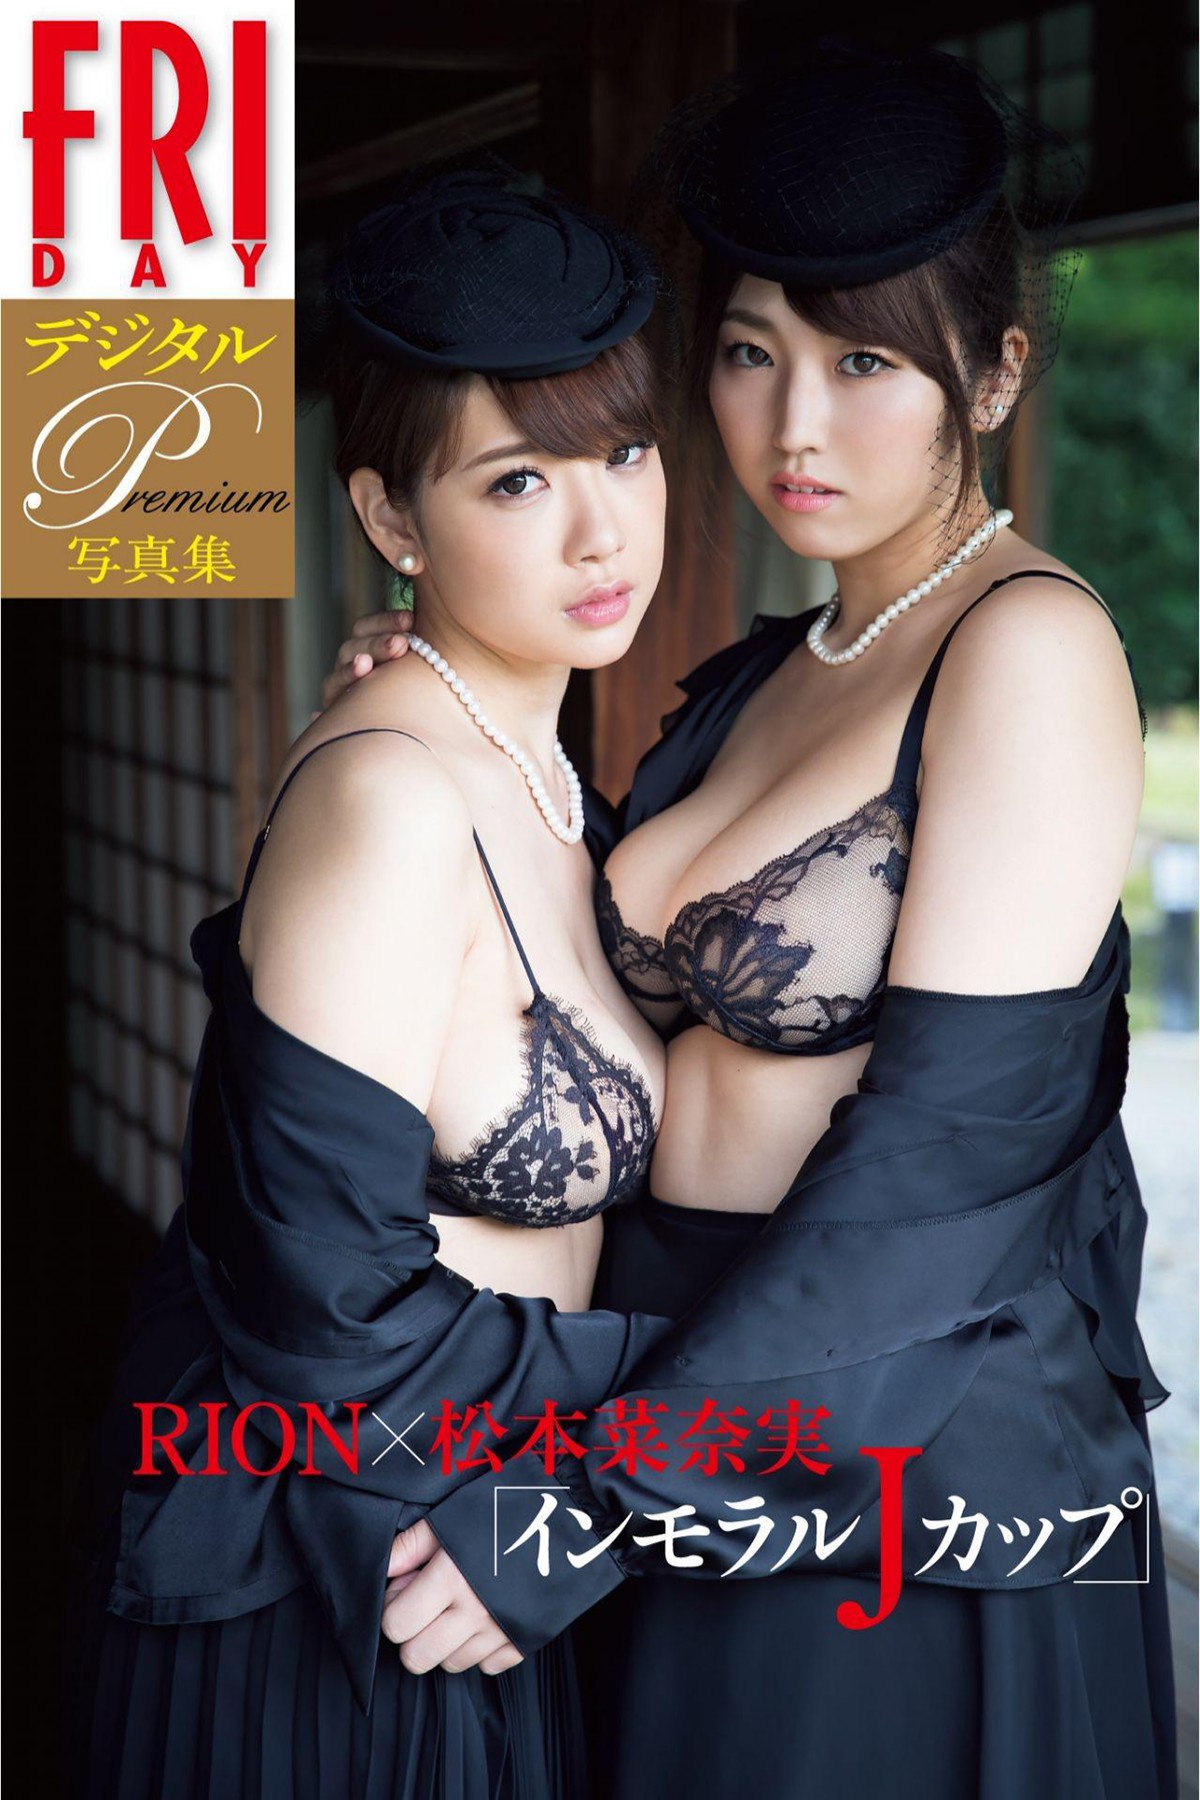 FRIDAY Digital Photobook 2018-02-09 Rion And Nanami Matsumoto 松本菜奈実 – Immoral J Cup